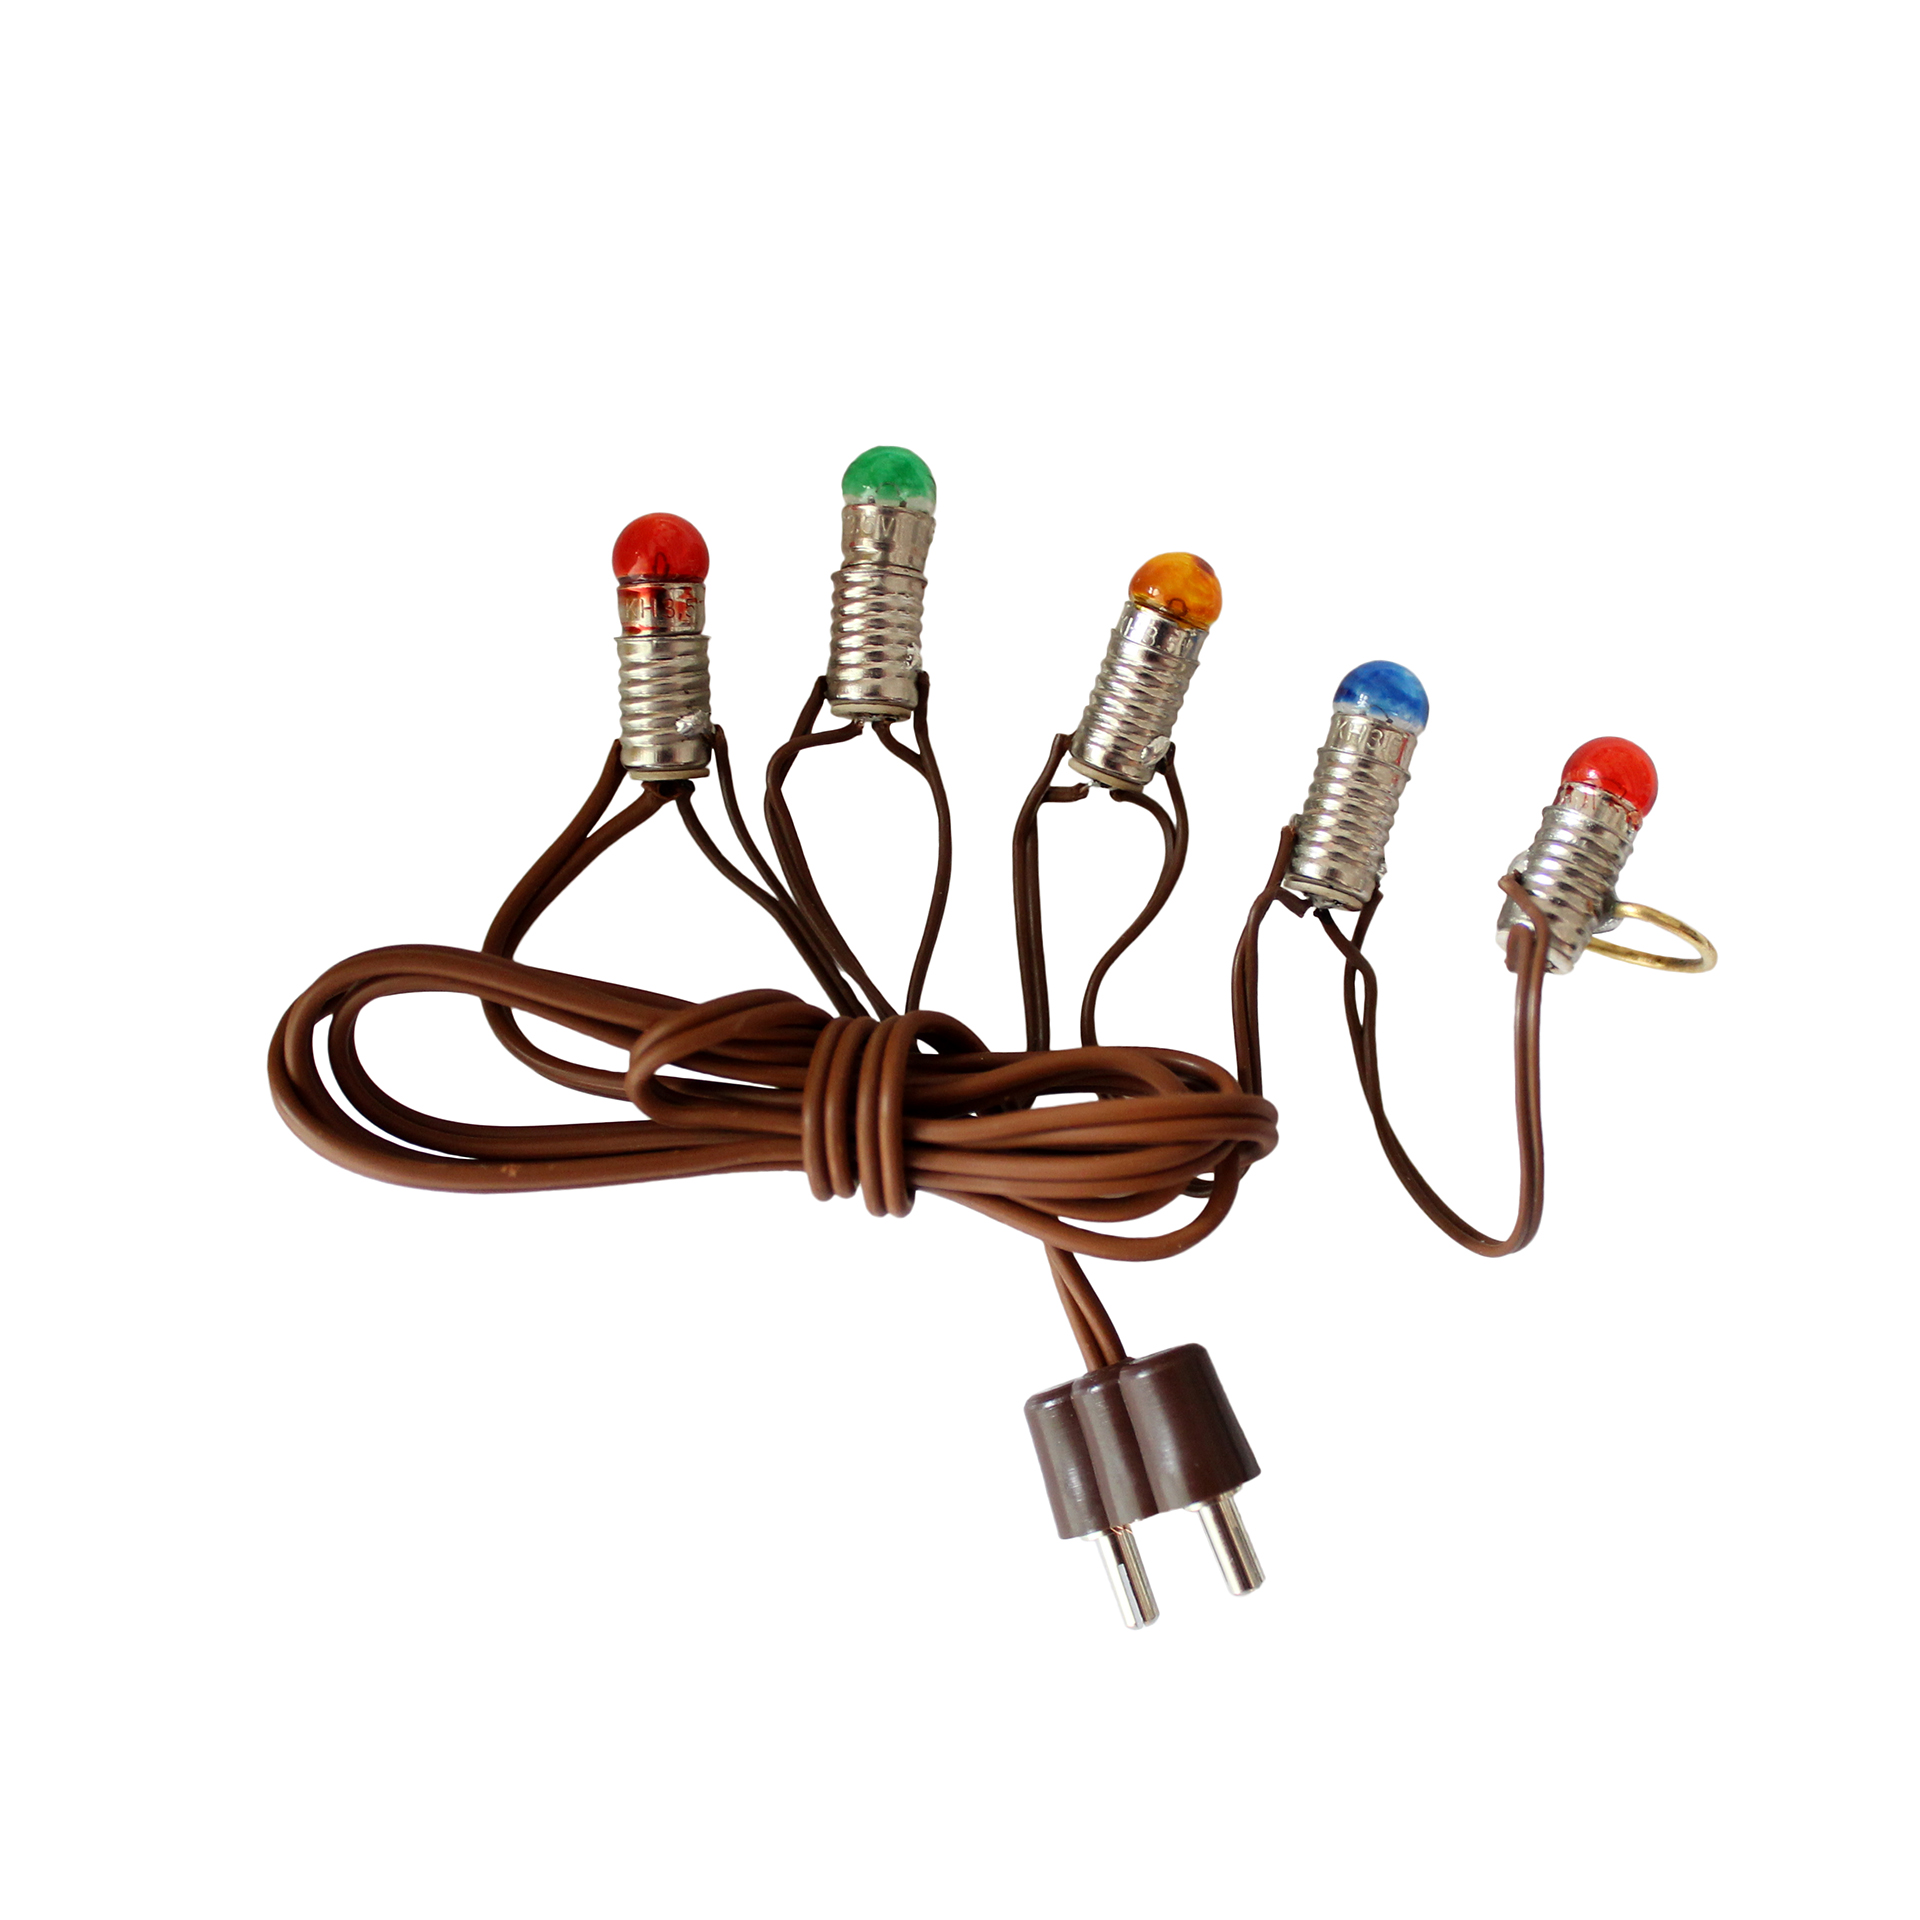 Miniatur Lichterkette mit 5 LED Birnchen, Kabel braun